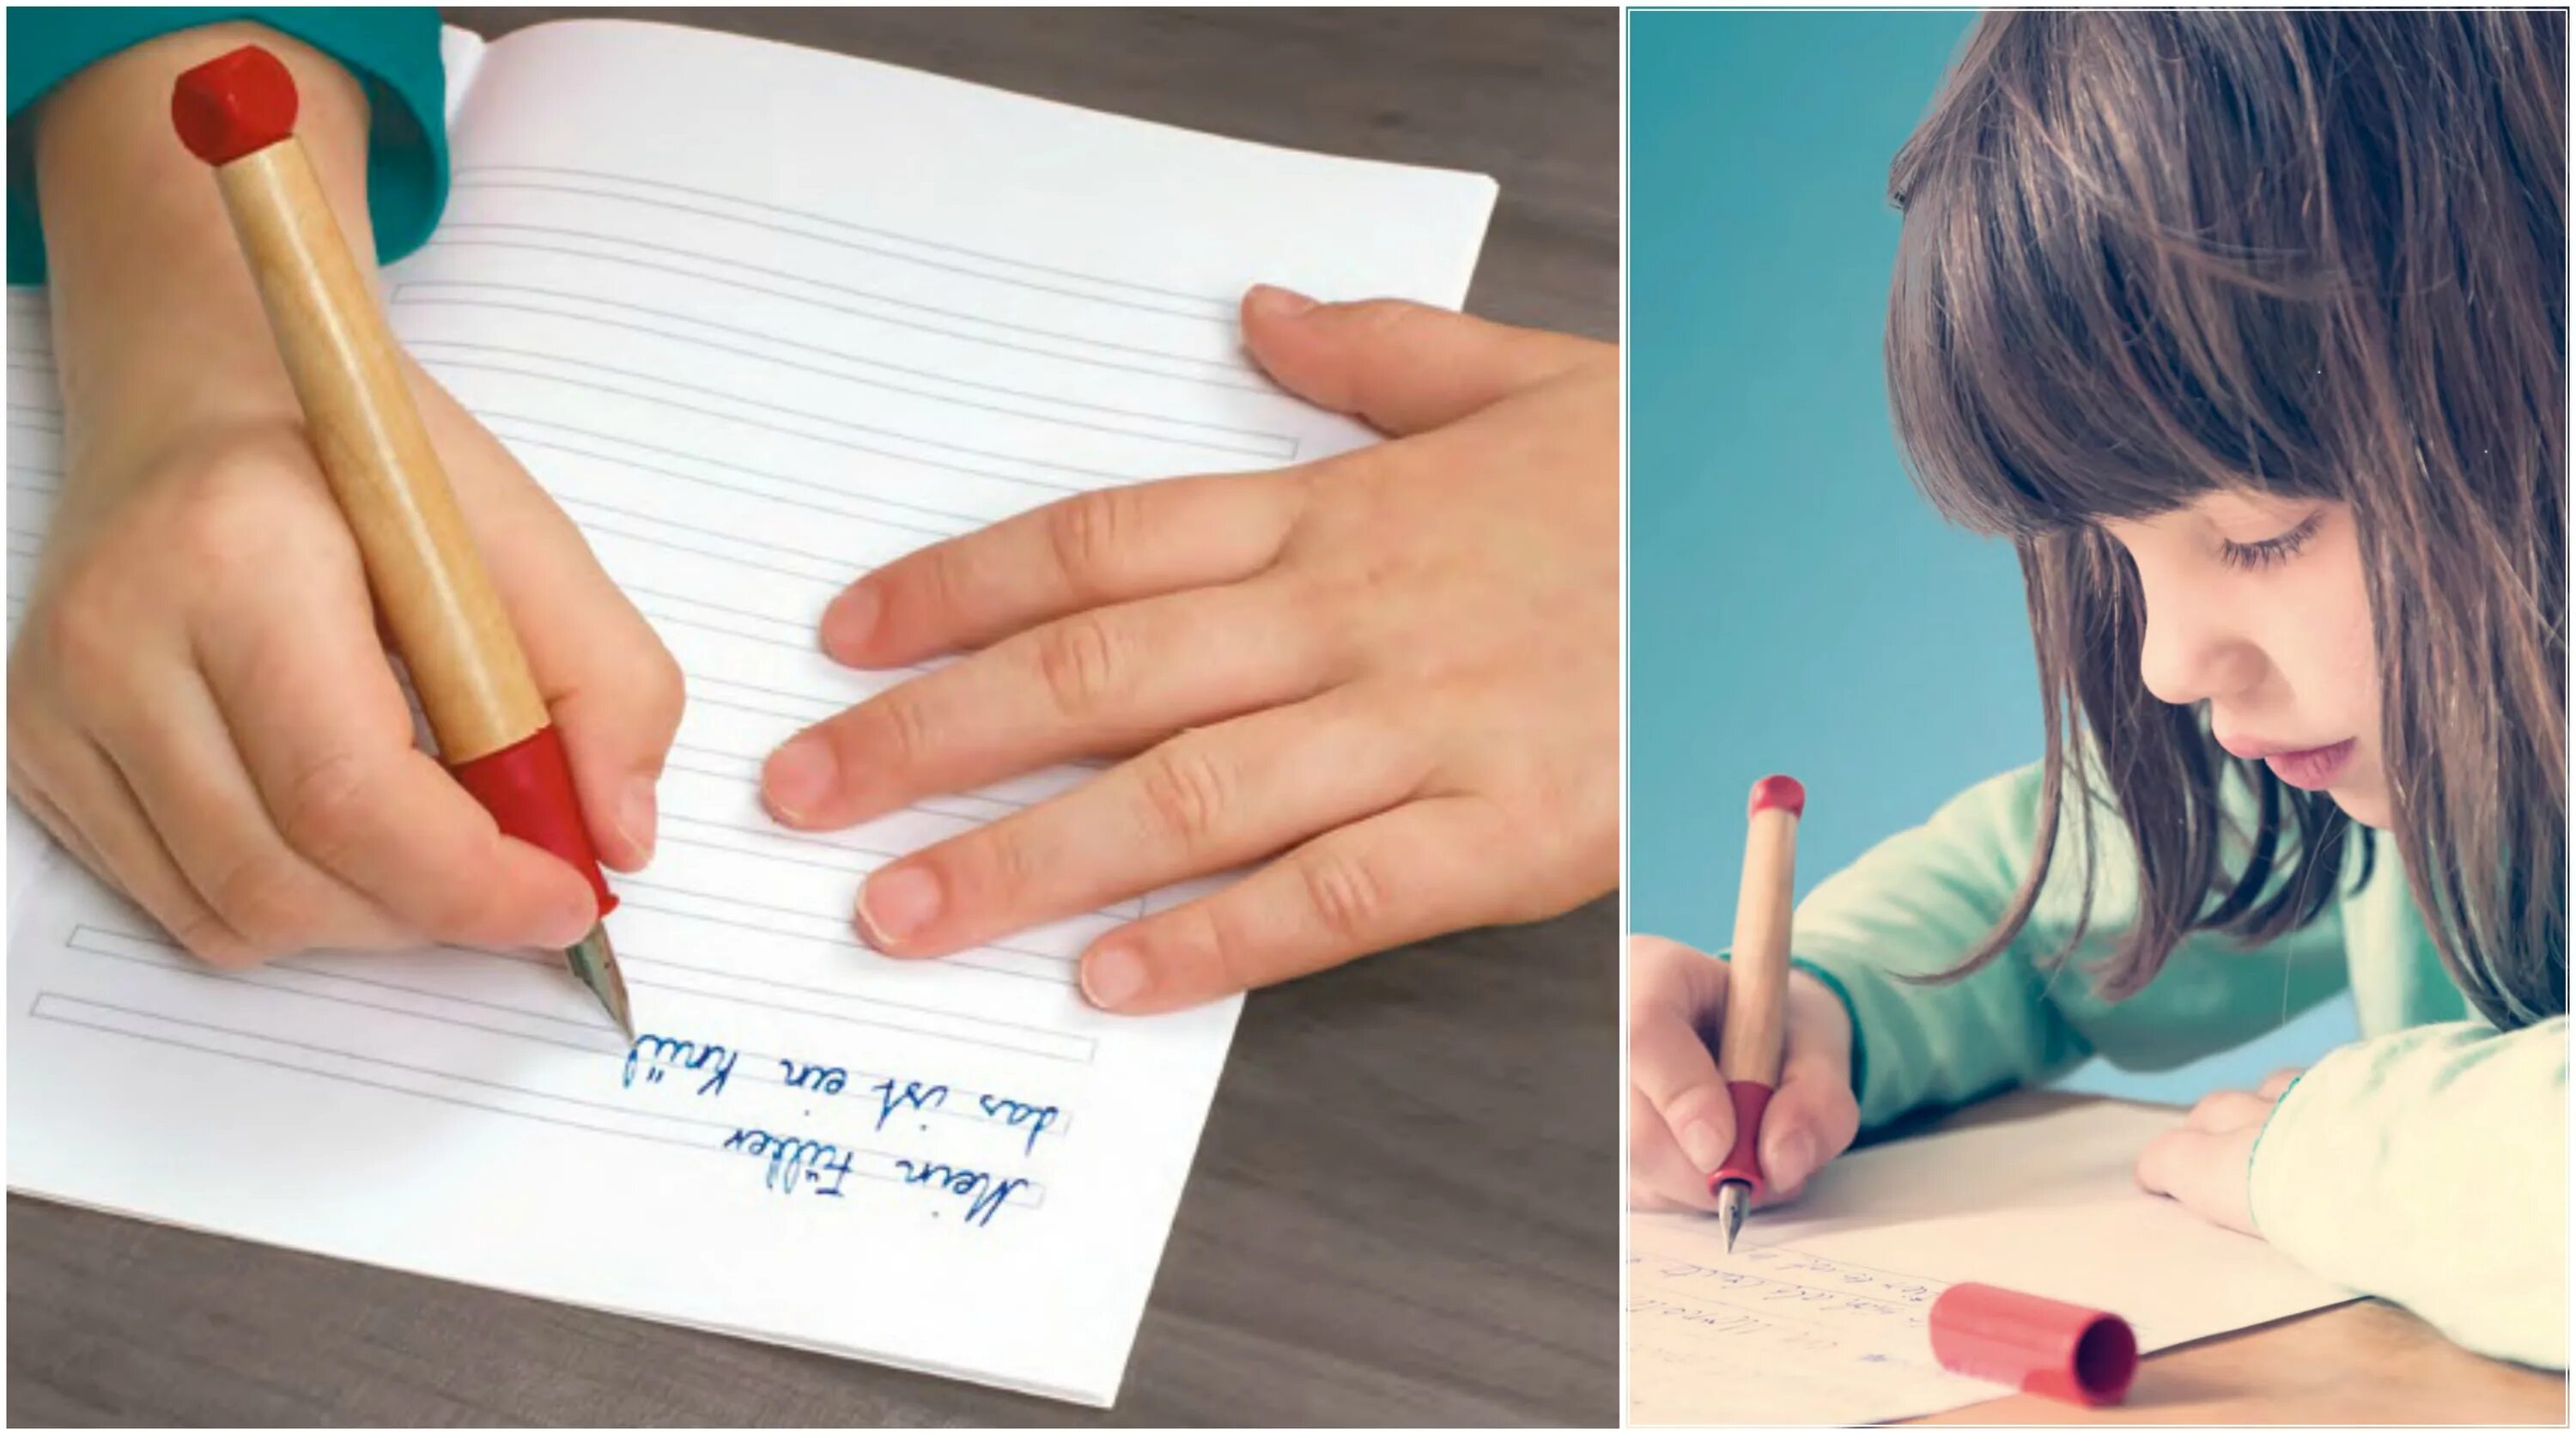 Можно взять ручку. Рука с ручкой. Ручки и тетради на руках. Ребенок пишет. Ручка для письма.